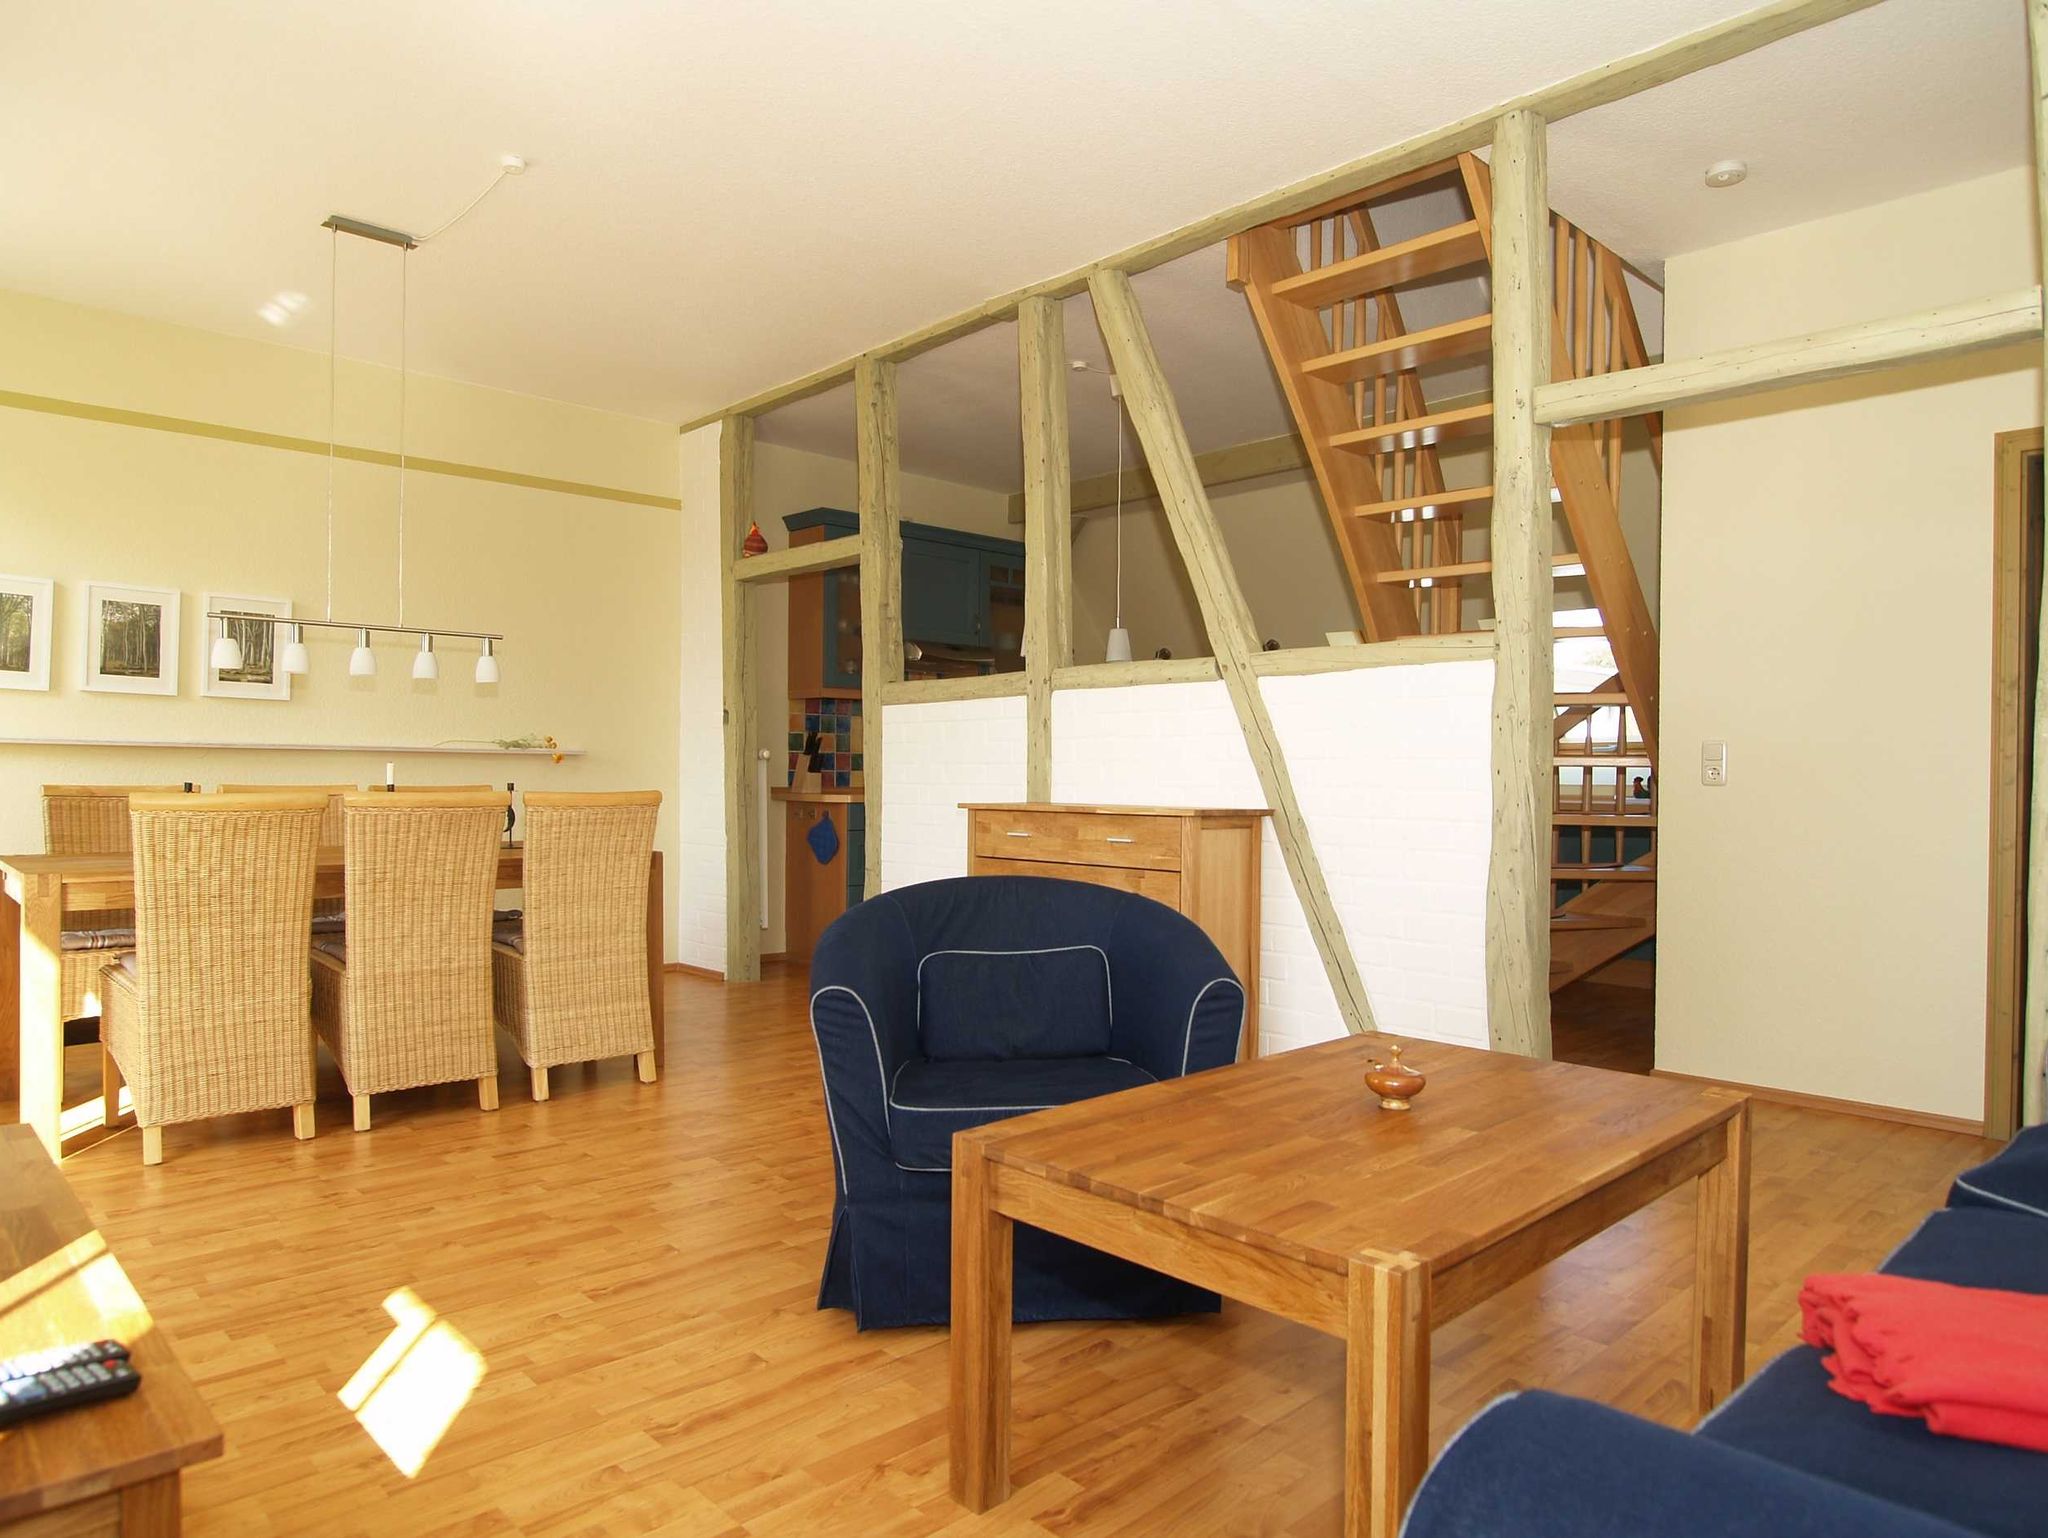 Der urig-gemütliche Wohnbereich mit Sitzecke, Essecke und alten Holzbalken zur Raumtrennung